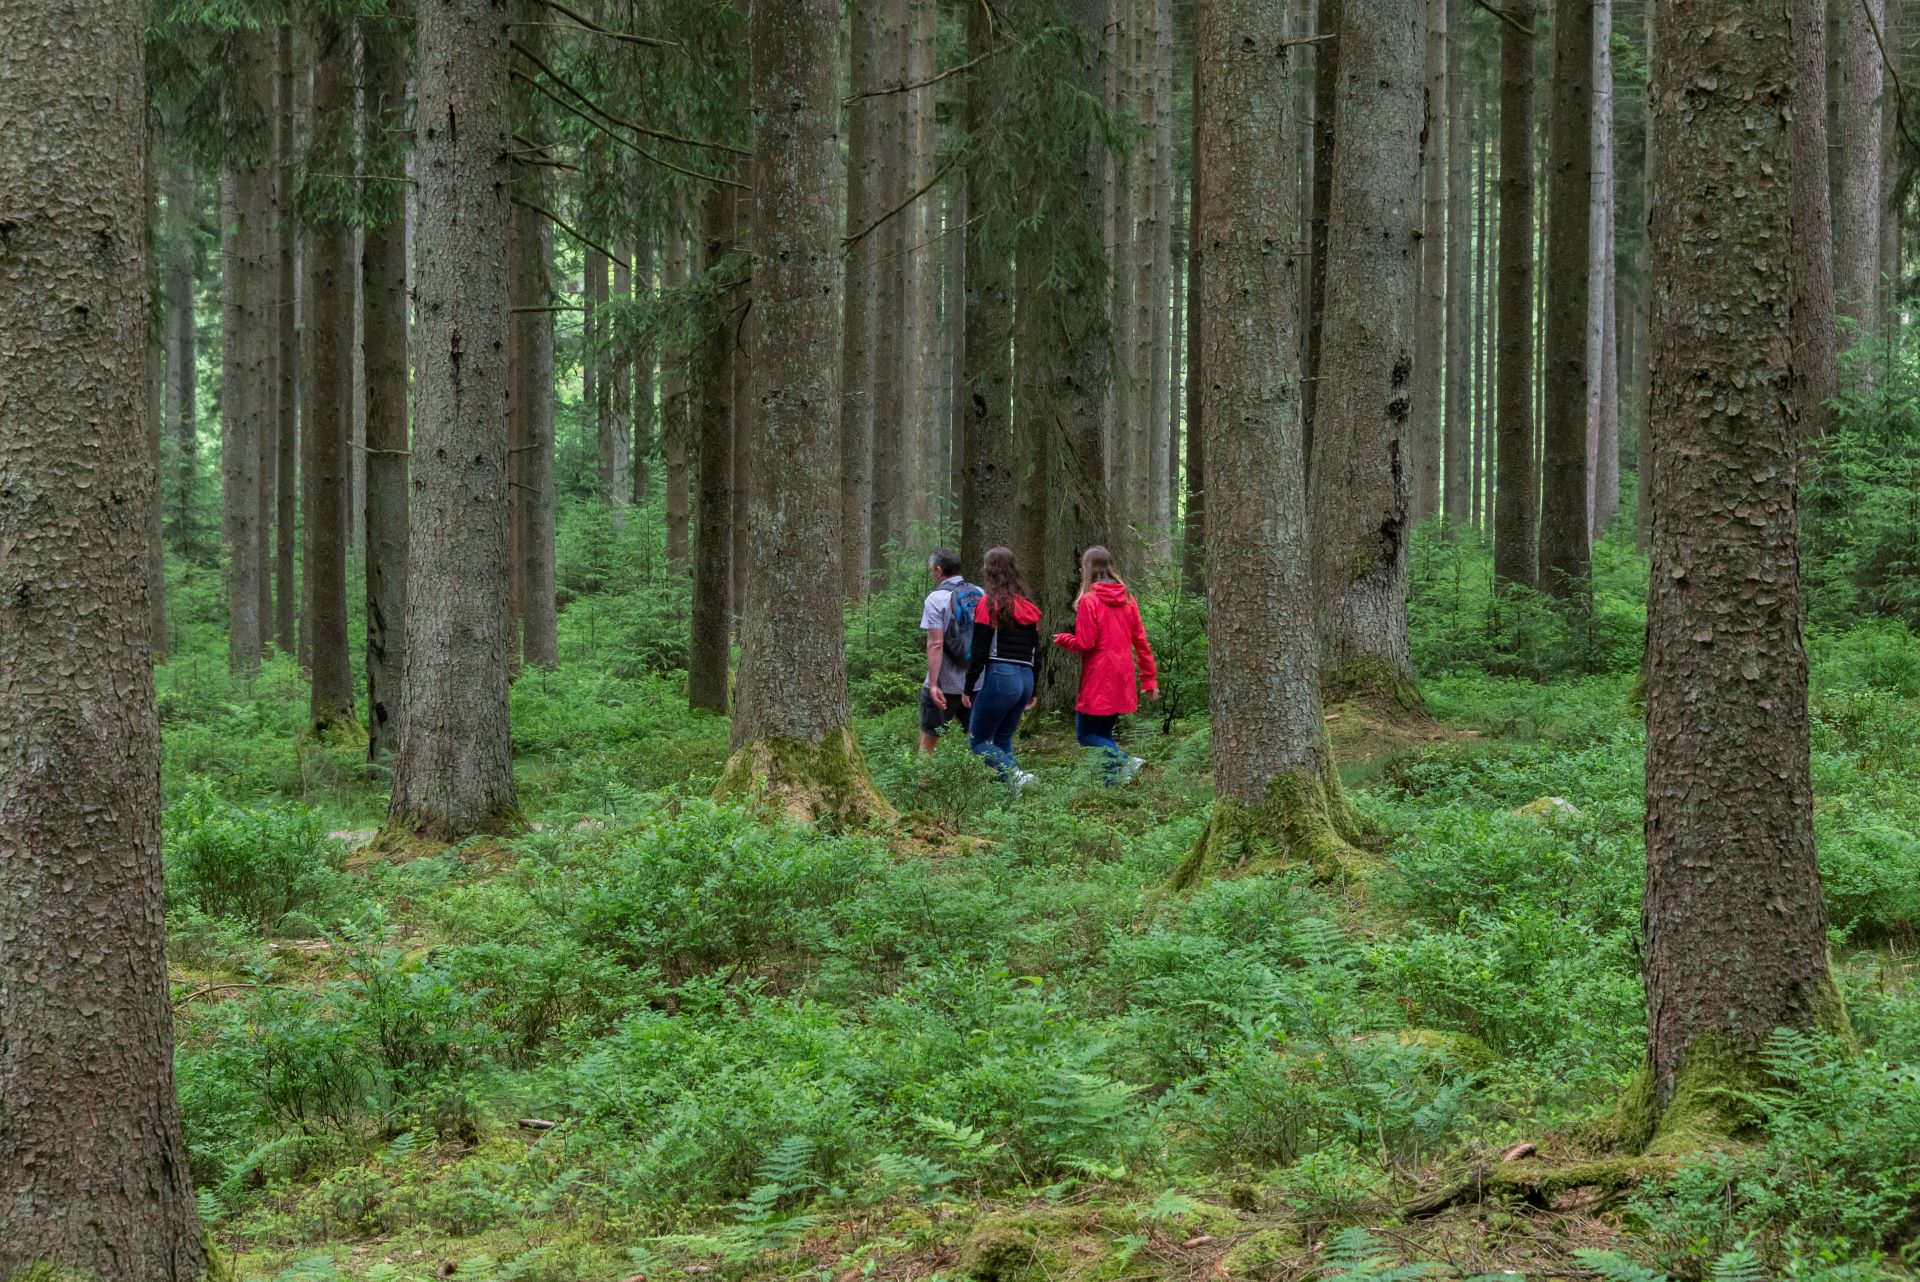 Drei Wanderer sind von weitem sichtbar, sie tragen helle Kleidung. Sie gehen durch einen Wald mit riesigen Bäumen und tiefliegenden Grünpflanzen.